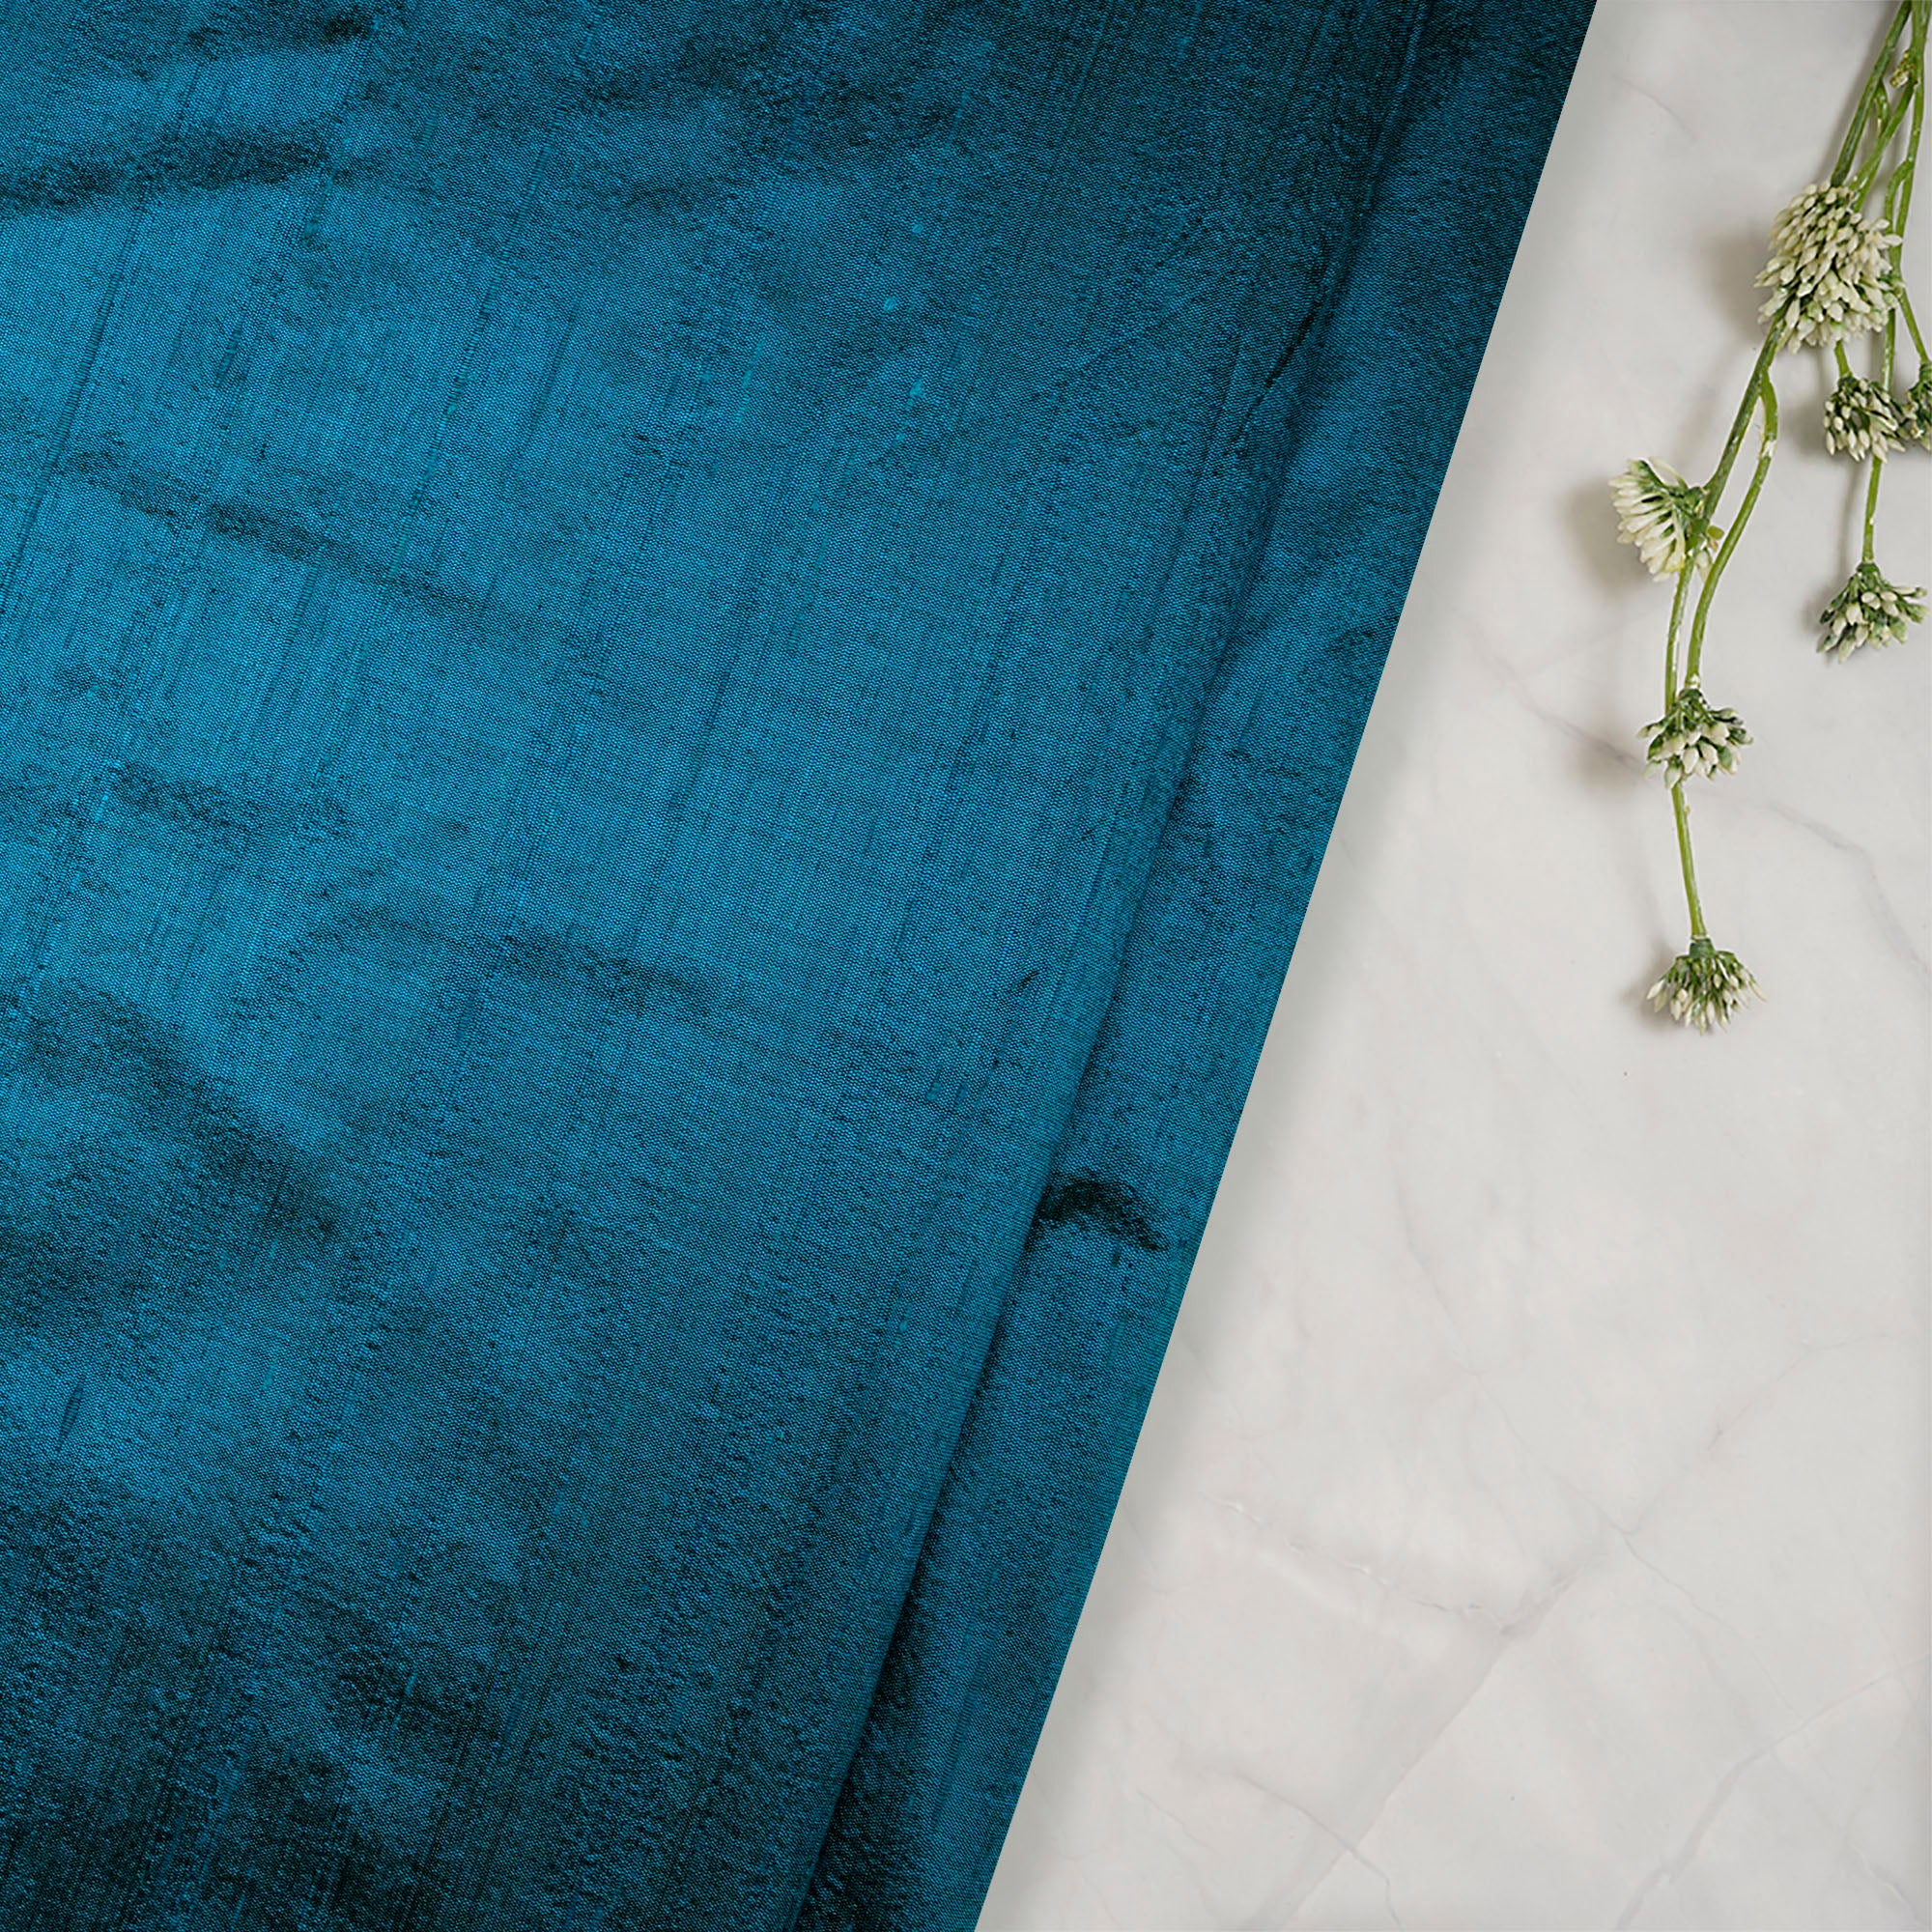 Royal Blue Silk Fabric by the Yard, 41 Inch Royal Blue Dupioni